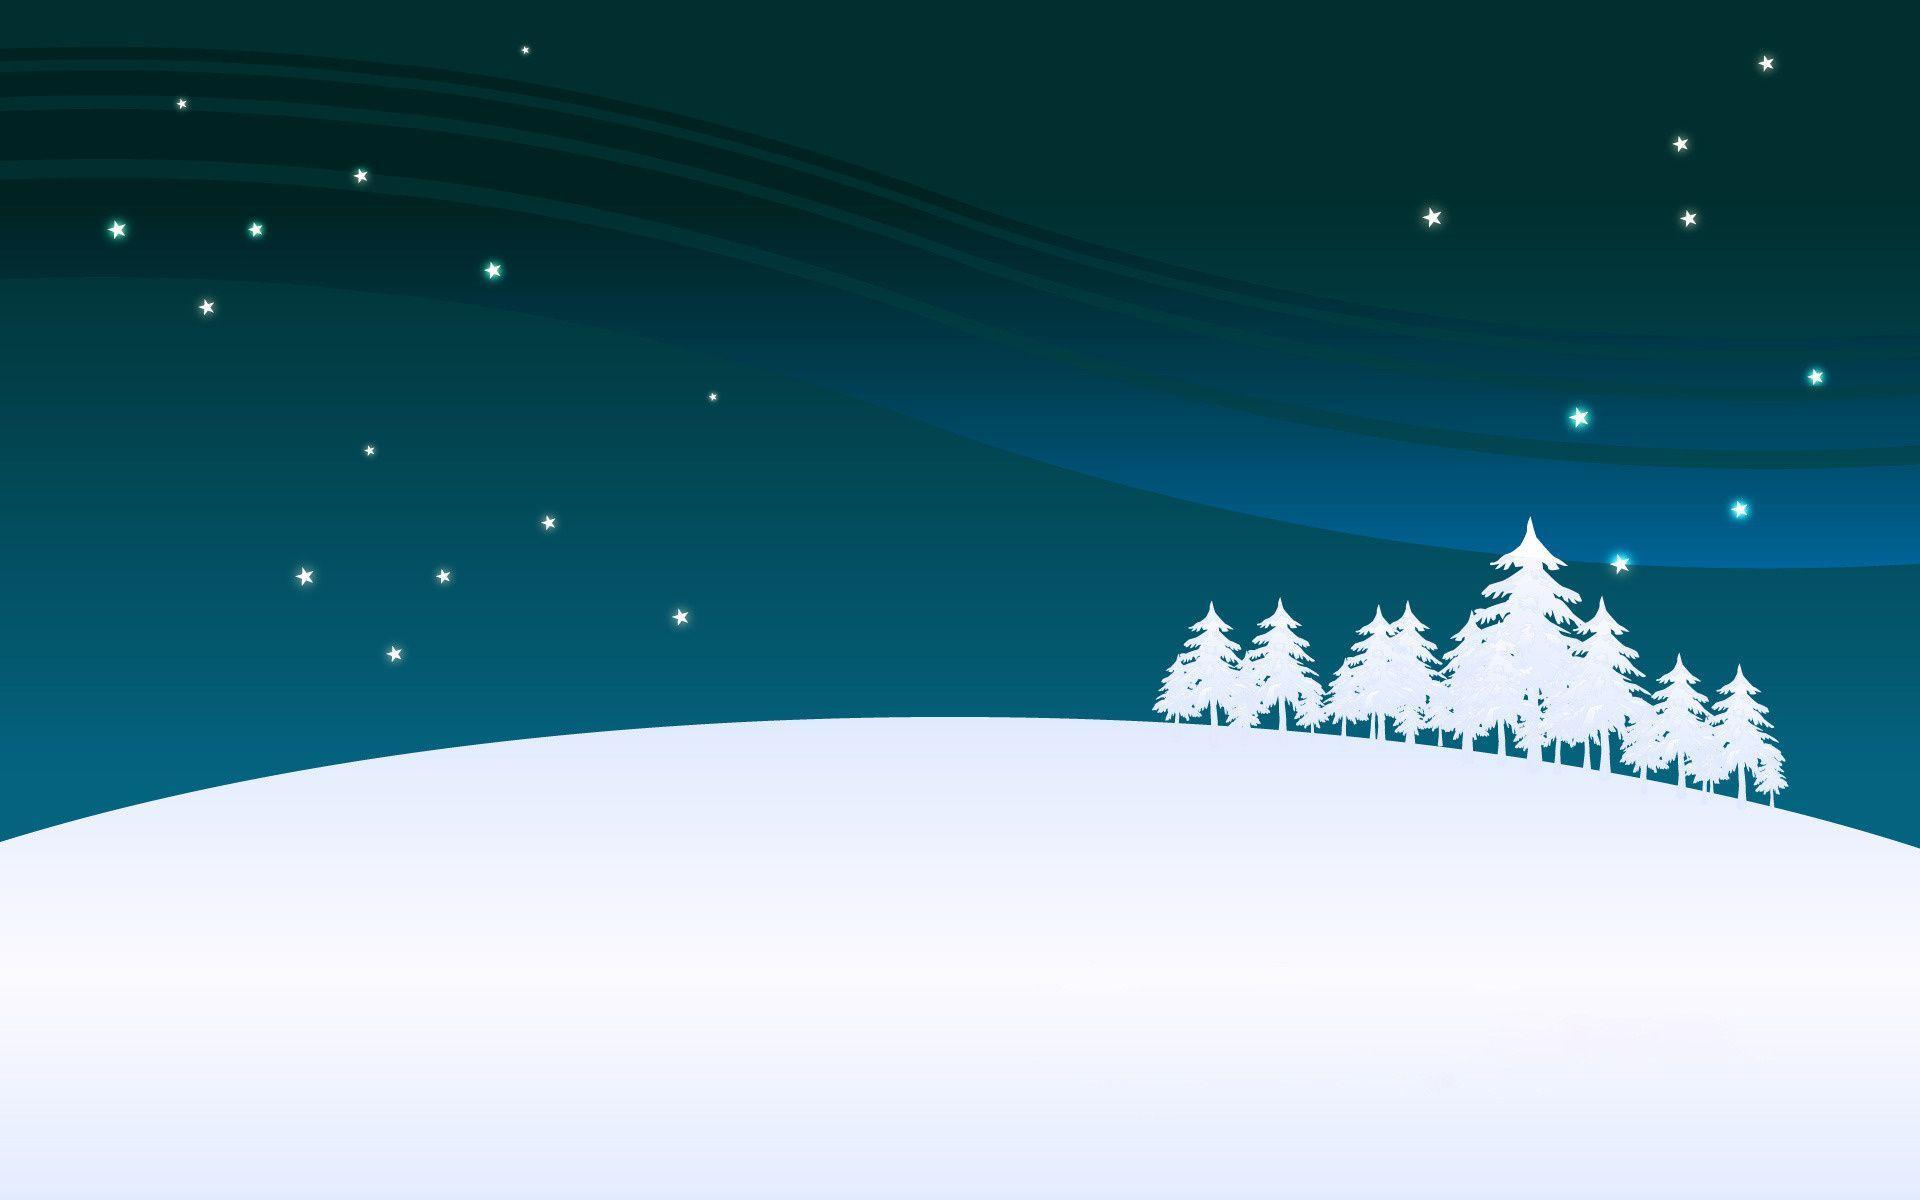 Free Winter Holiday Desktop Wallpaper 20806 Full HD Wallpaper